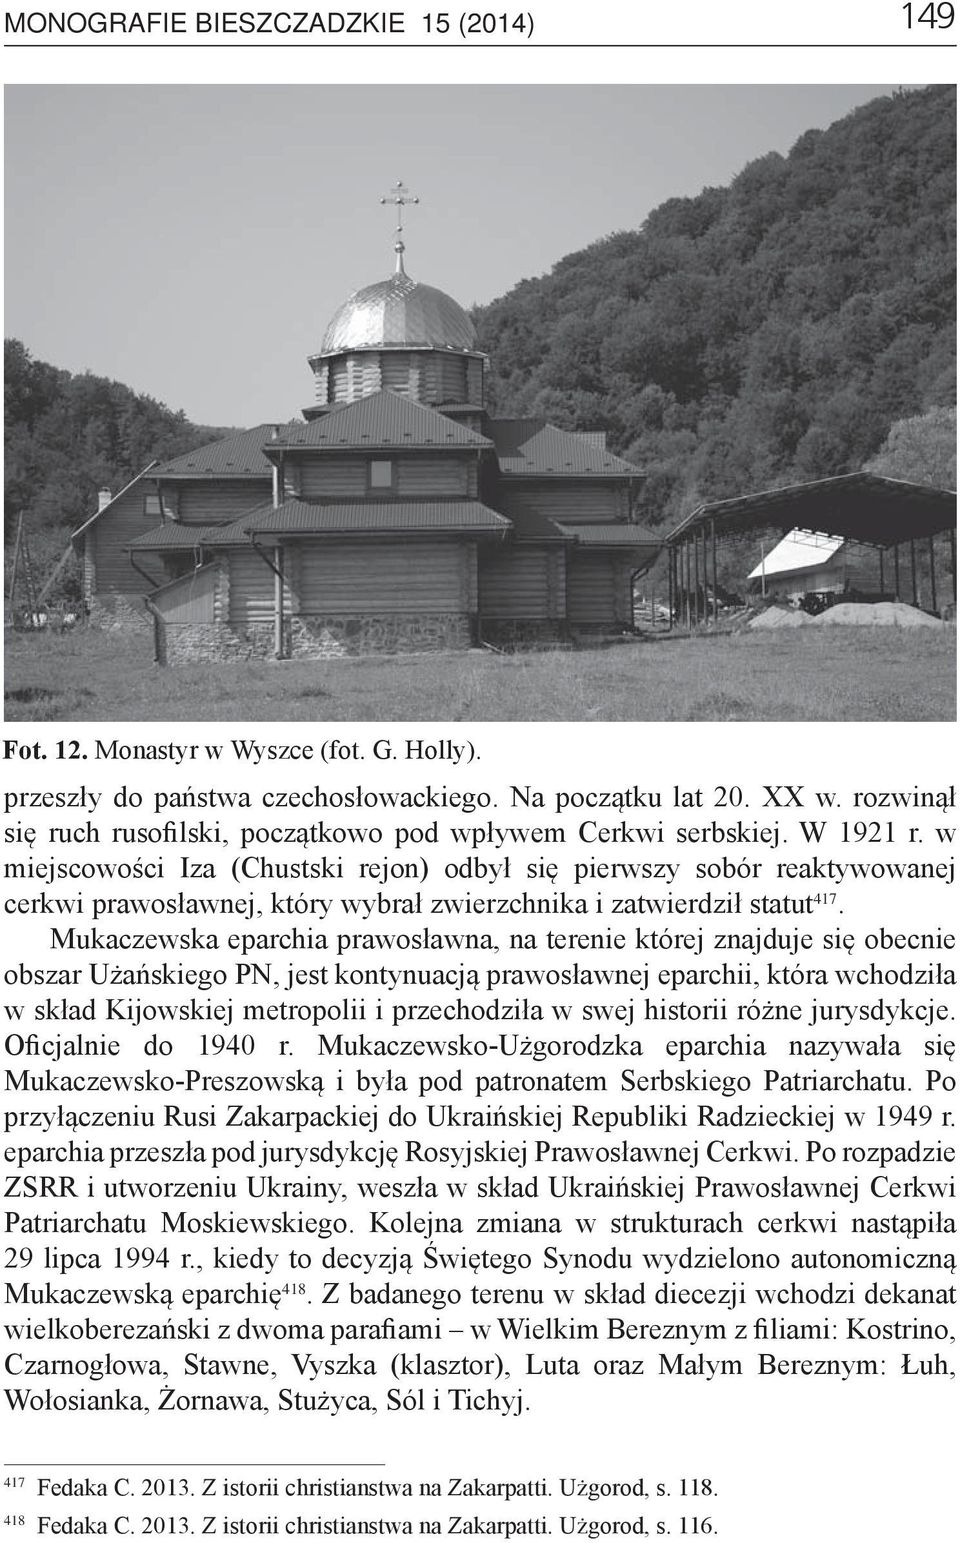 w miejscowości Iza (Chustski rejon) odbył się pierwszy sobór reaktywowanej cerkwi prawosławnej, który wybrał zwierzchnika i zatwierdził statut 417.